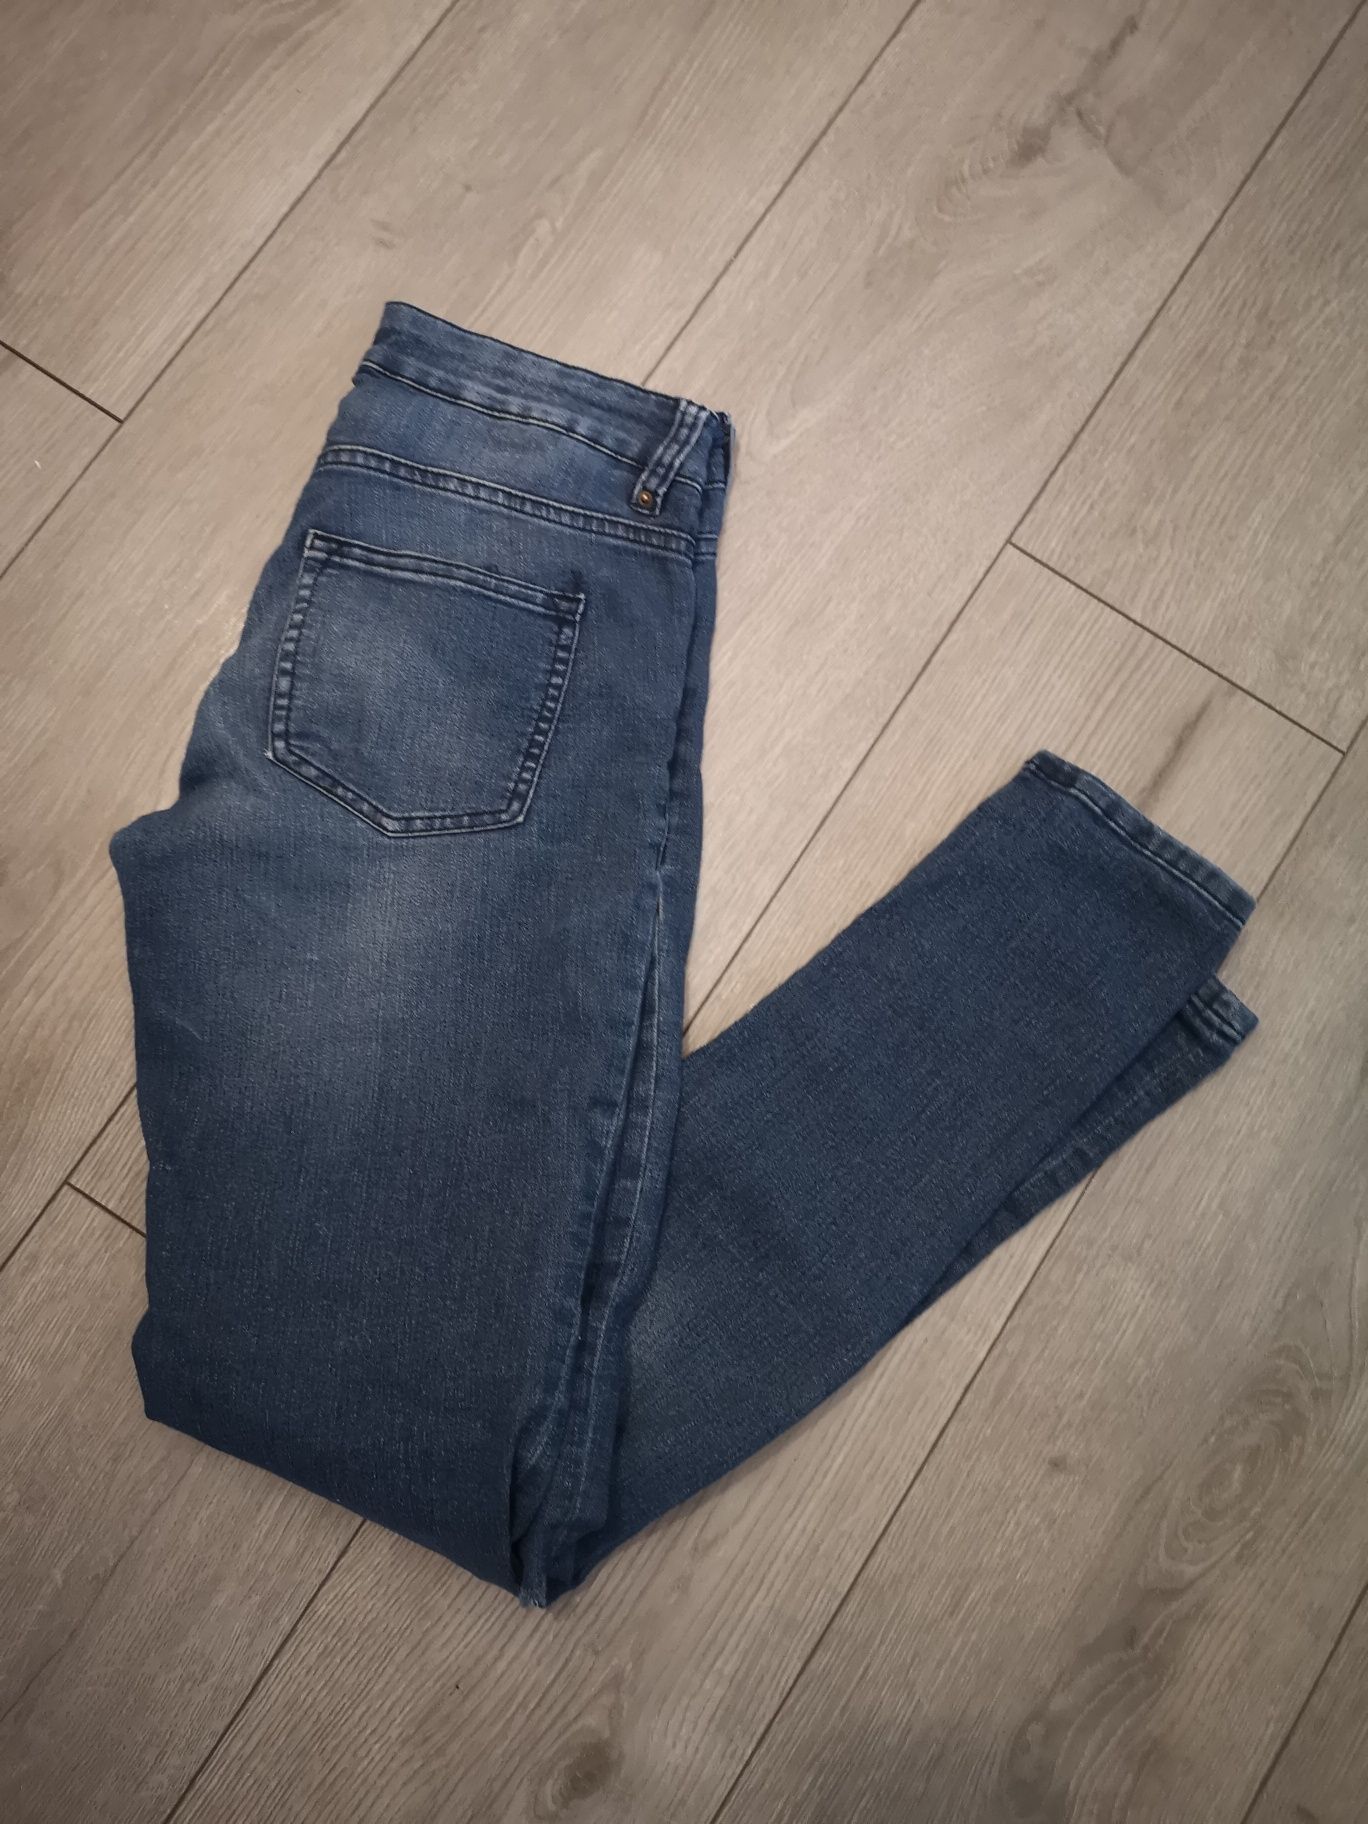 Spodnie jeansowe H&M rozmiar 34